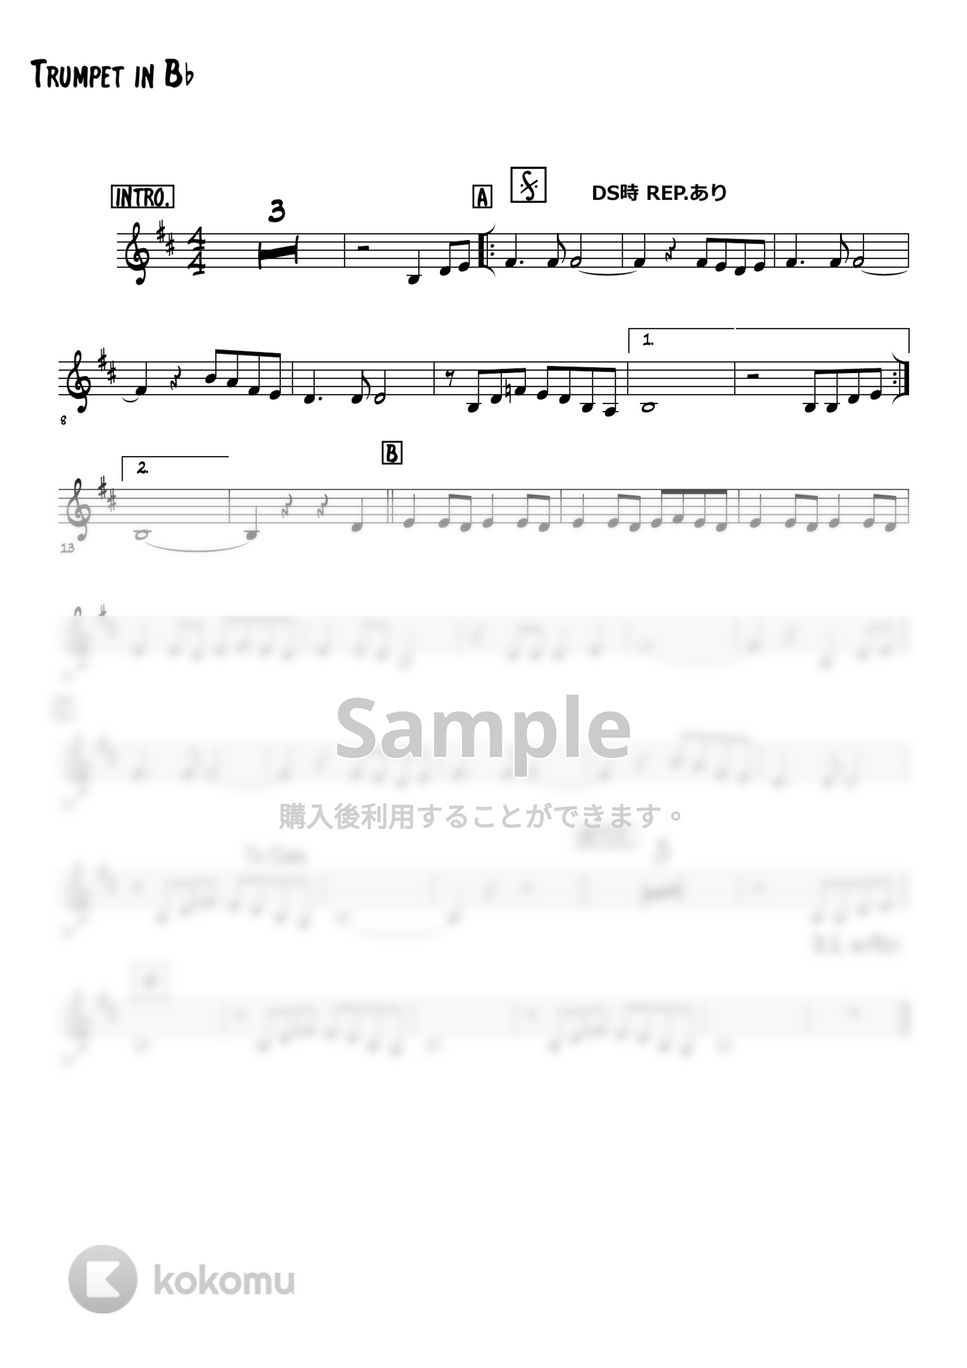 美空ひばり - 真赤な太陽 (トランペットメロディー楽譜) by 高田将利